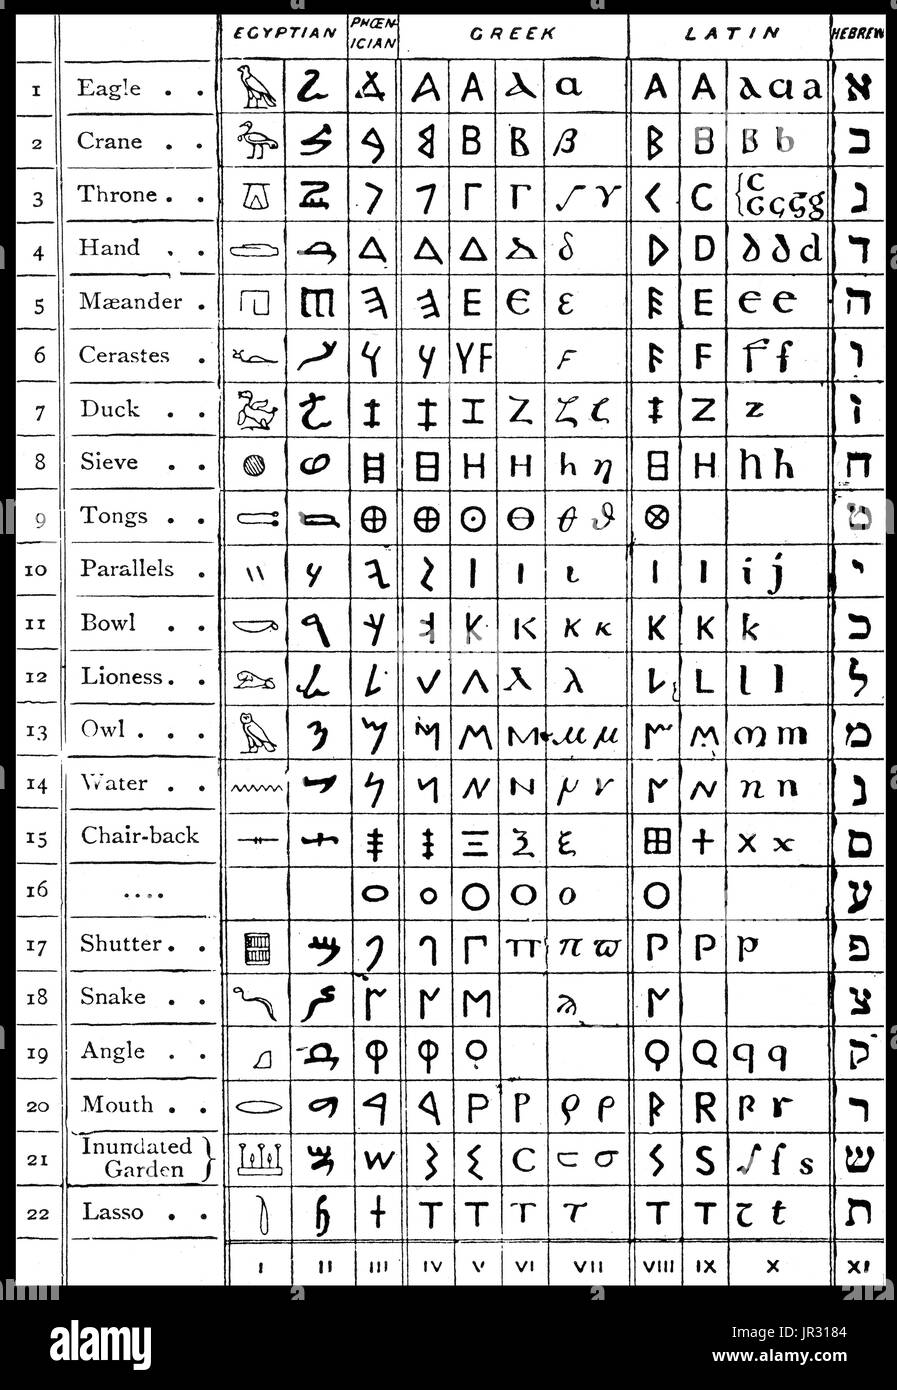 Un pictogramme est un idéogramme qui donne son sens à travers son langage imagé de ressemblance avec un objet physique. Les hiéroglyphes égyptiens ont été la rédaction même système utilisé dans l'Egypte ancienne. Il logographic combiné, syllabique et 2002 éléments, avec un total de quelque 1 000 caractères distincts. L'alphabet phénicien, appelée par convention l'alphabet Proto-Canaanite pour des inscriptions de plus de autour de 1050 avant J.-C., est le plus ancien alphabet vérifié. L'alphabet phénicien est dérivé de hiéroglyphes égyptiens. L'alphabet grec a été utilisé pour écrire la langue grecque depuis la fin du ixe siècle avant J.-C. ou ea Banque D'Images